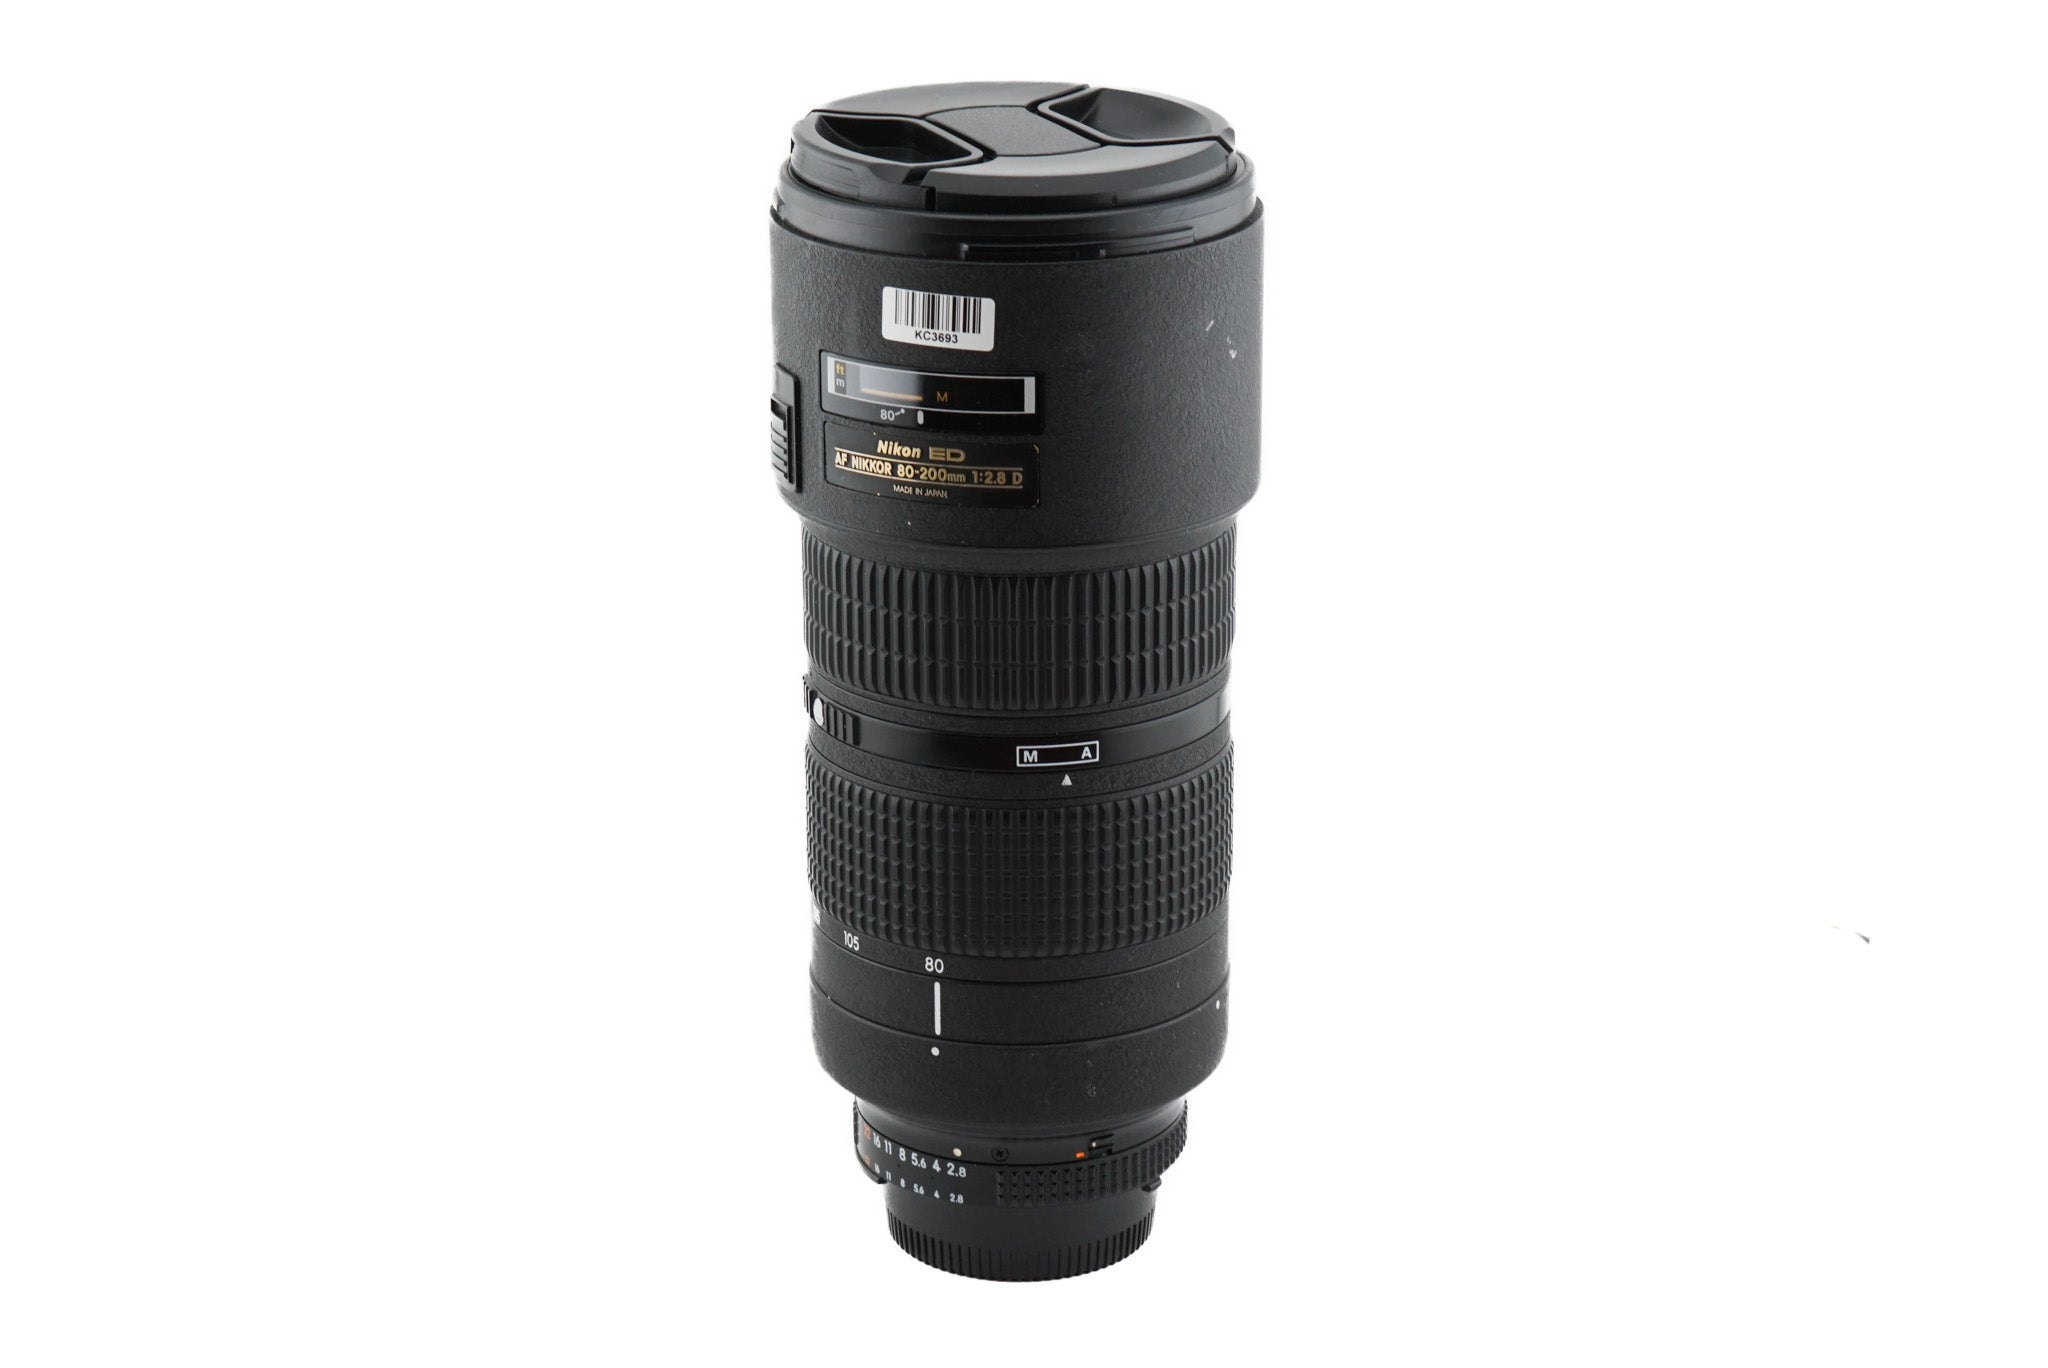 Nikon 80-200mm f2.8 D ED AF Zoom Nikkor (Mark III / Dual Ring